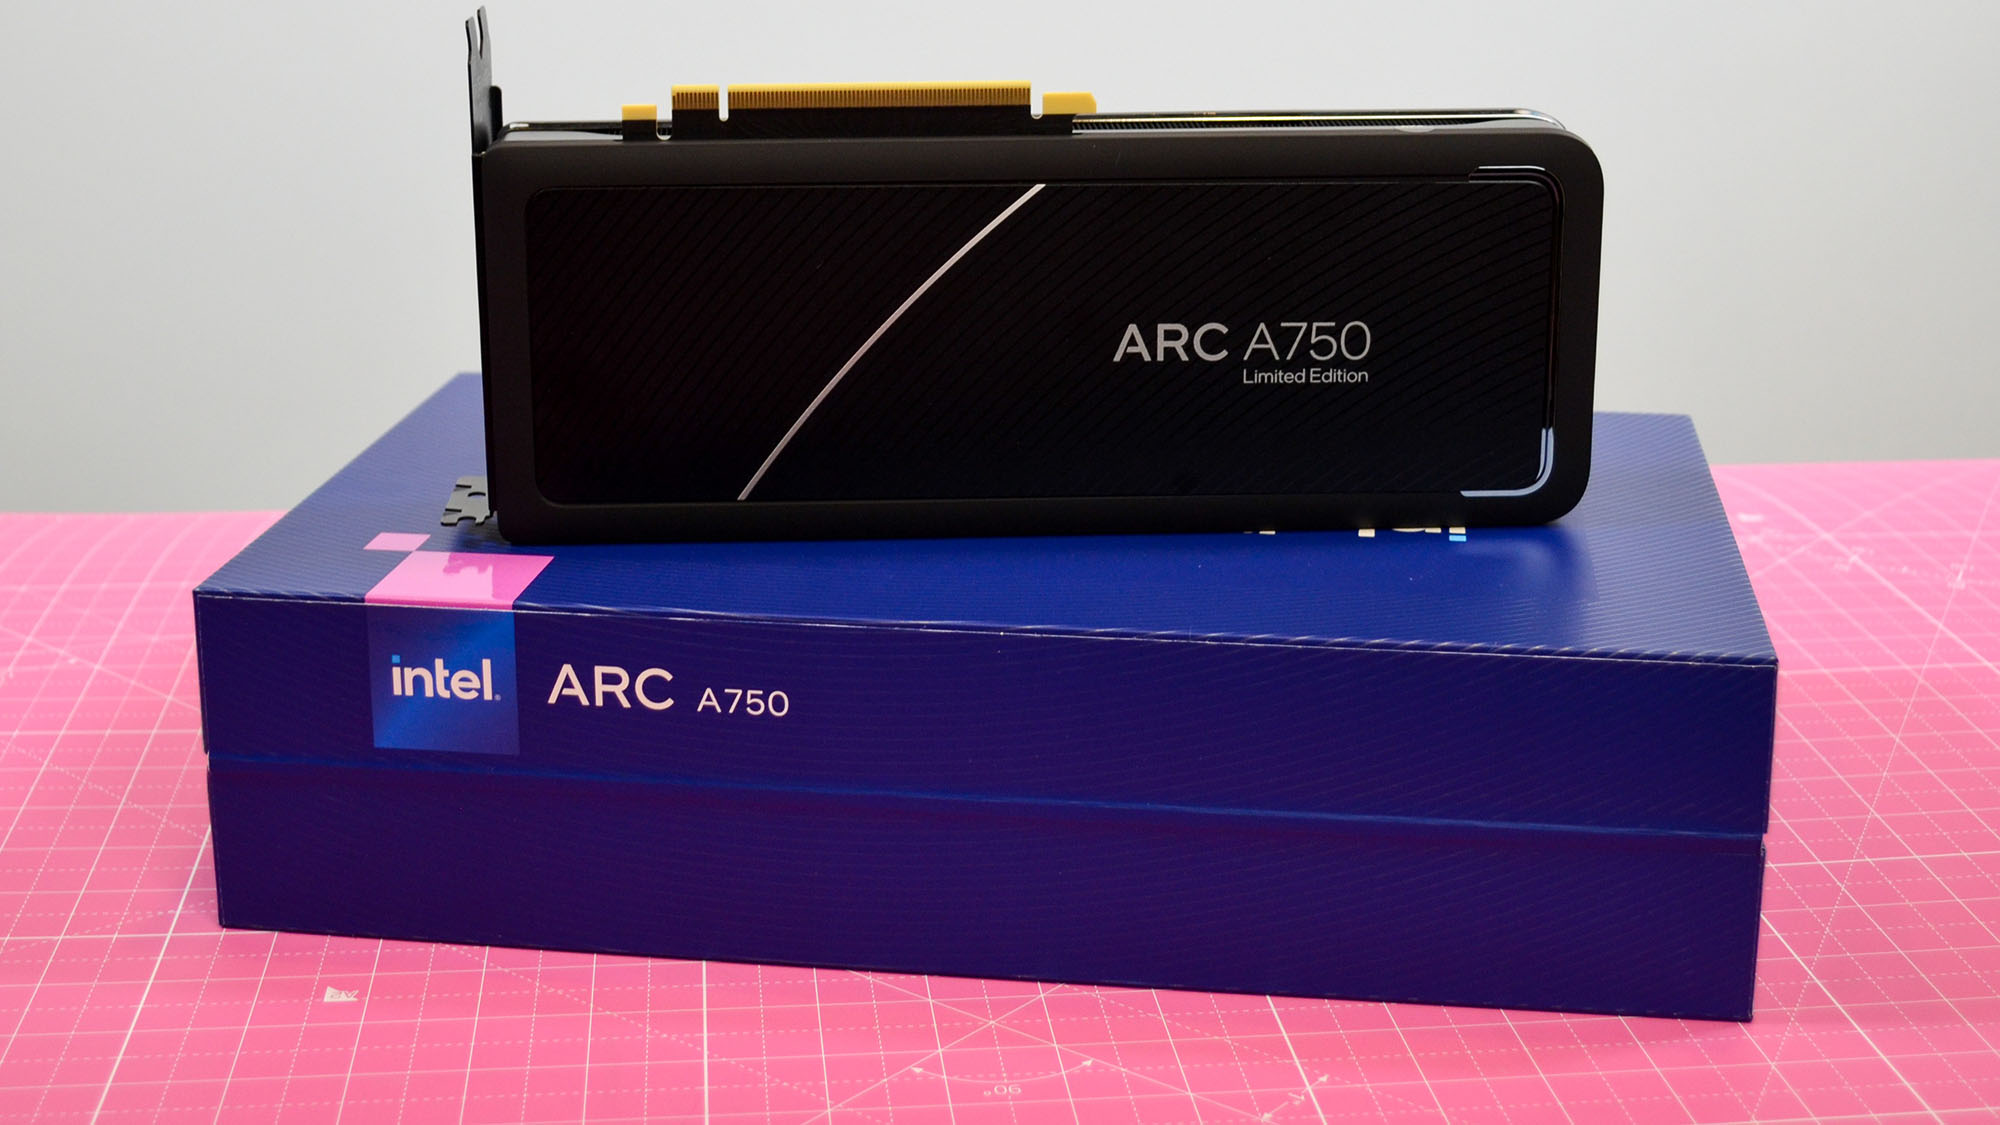 Uma placa gráfica Intel Arc A750 em um tapete de mesa rosa ao lado de sua embalagem retrátil